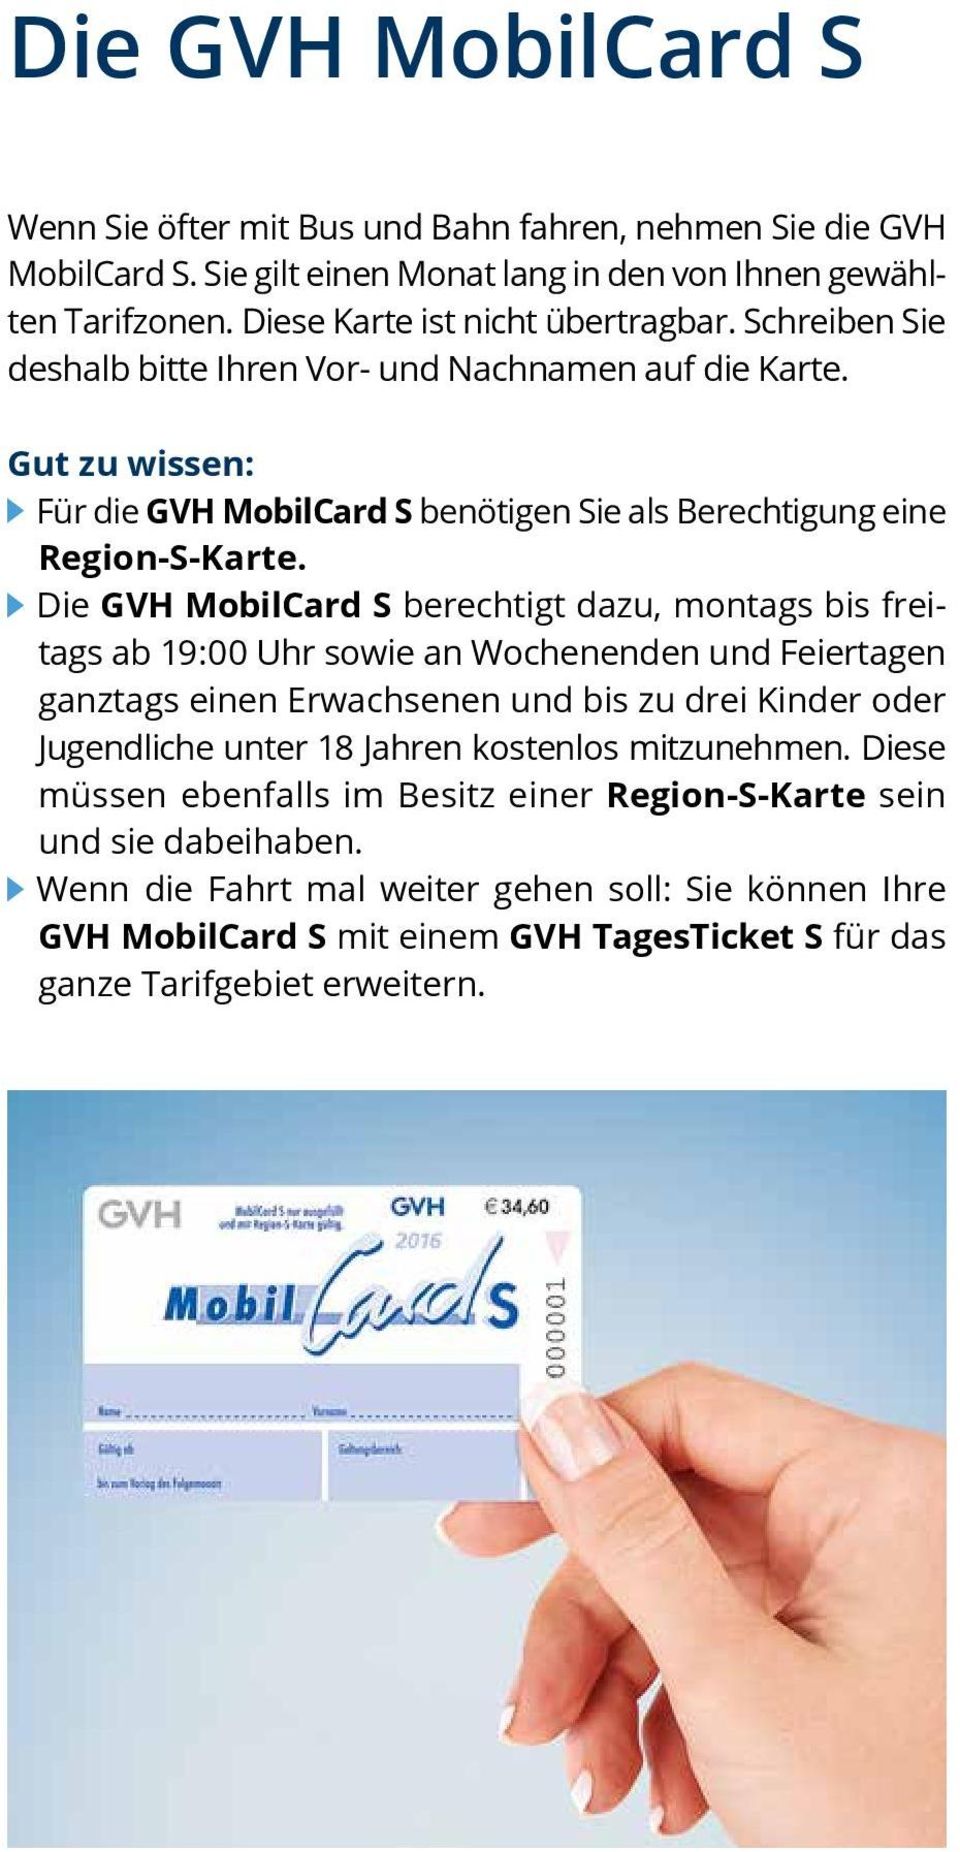 Die GVH MobilCard S berechtigt dazu, montags bis freitags ab 19:00 Uhr sowie an Wochenenden und Feiertagen ganztags einen Erwachsenen und bis zu drei Kinder oder Jugendliche unter 18 Jahren